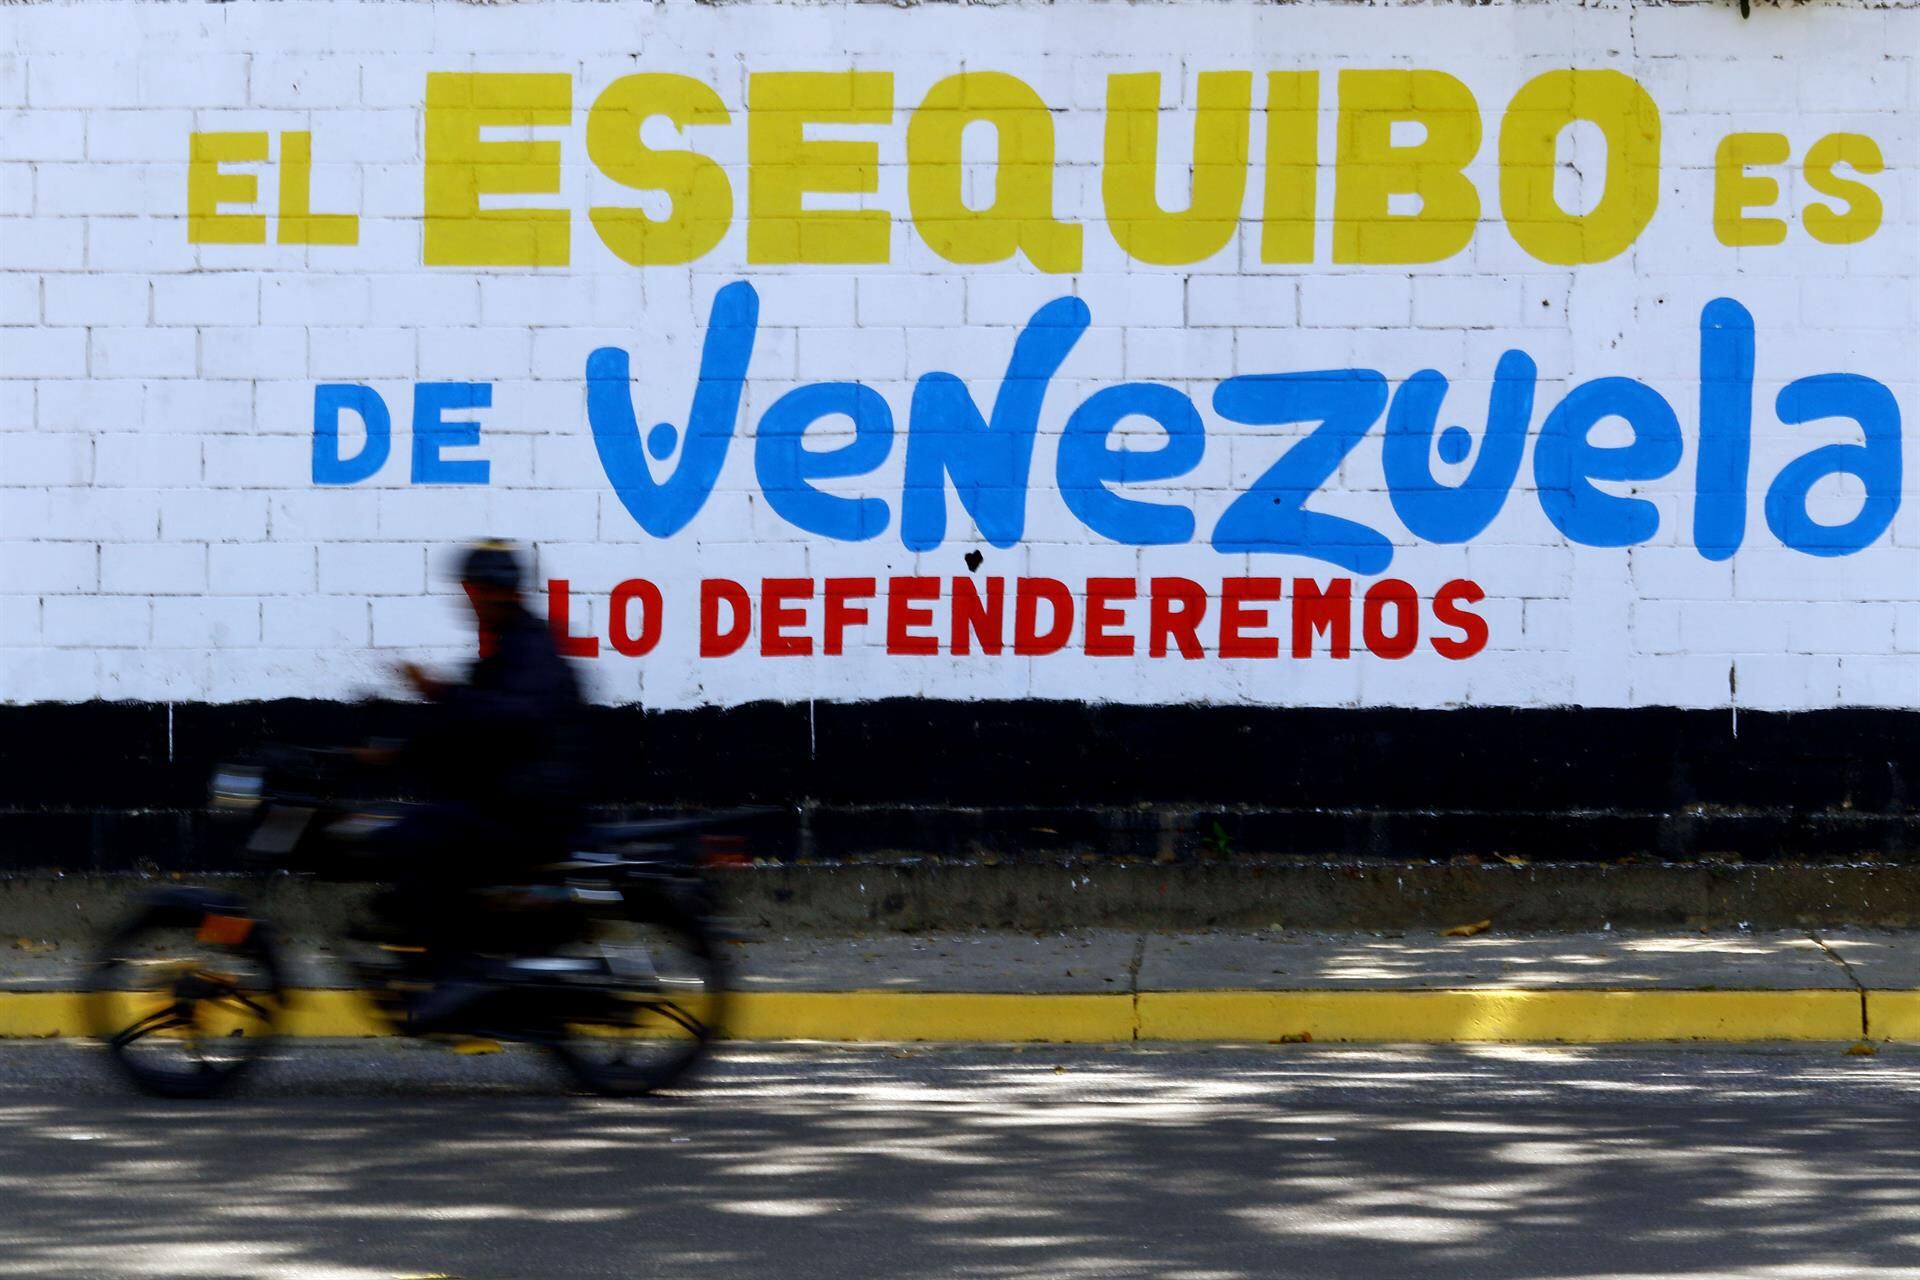 La CARICOM tacha de “inaceptable escalada en las tensiones” la ley de Venezuela para el Esequibo